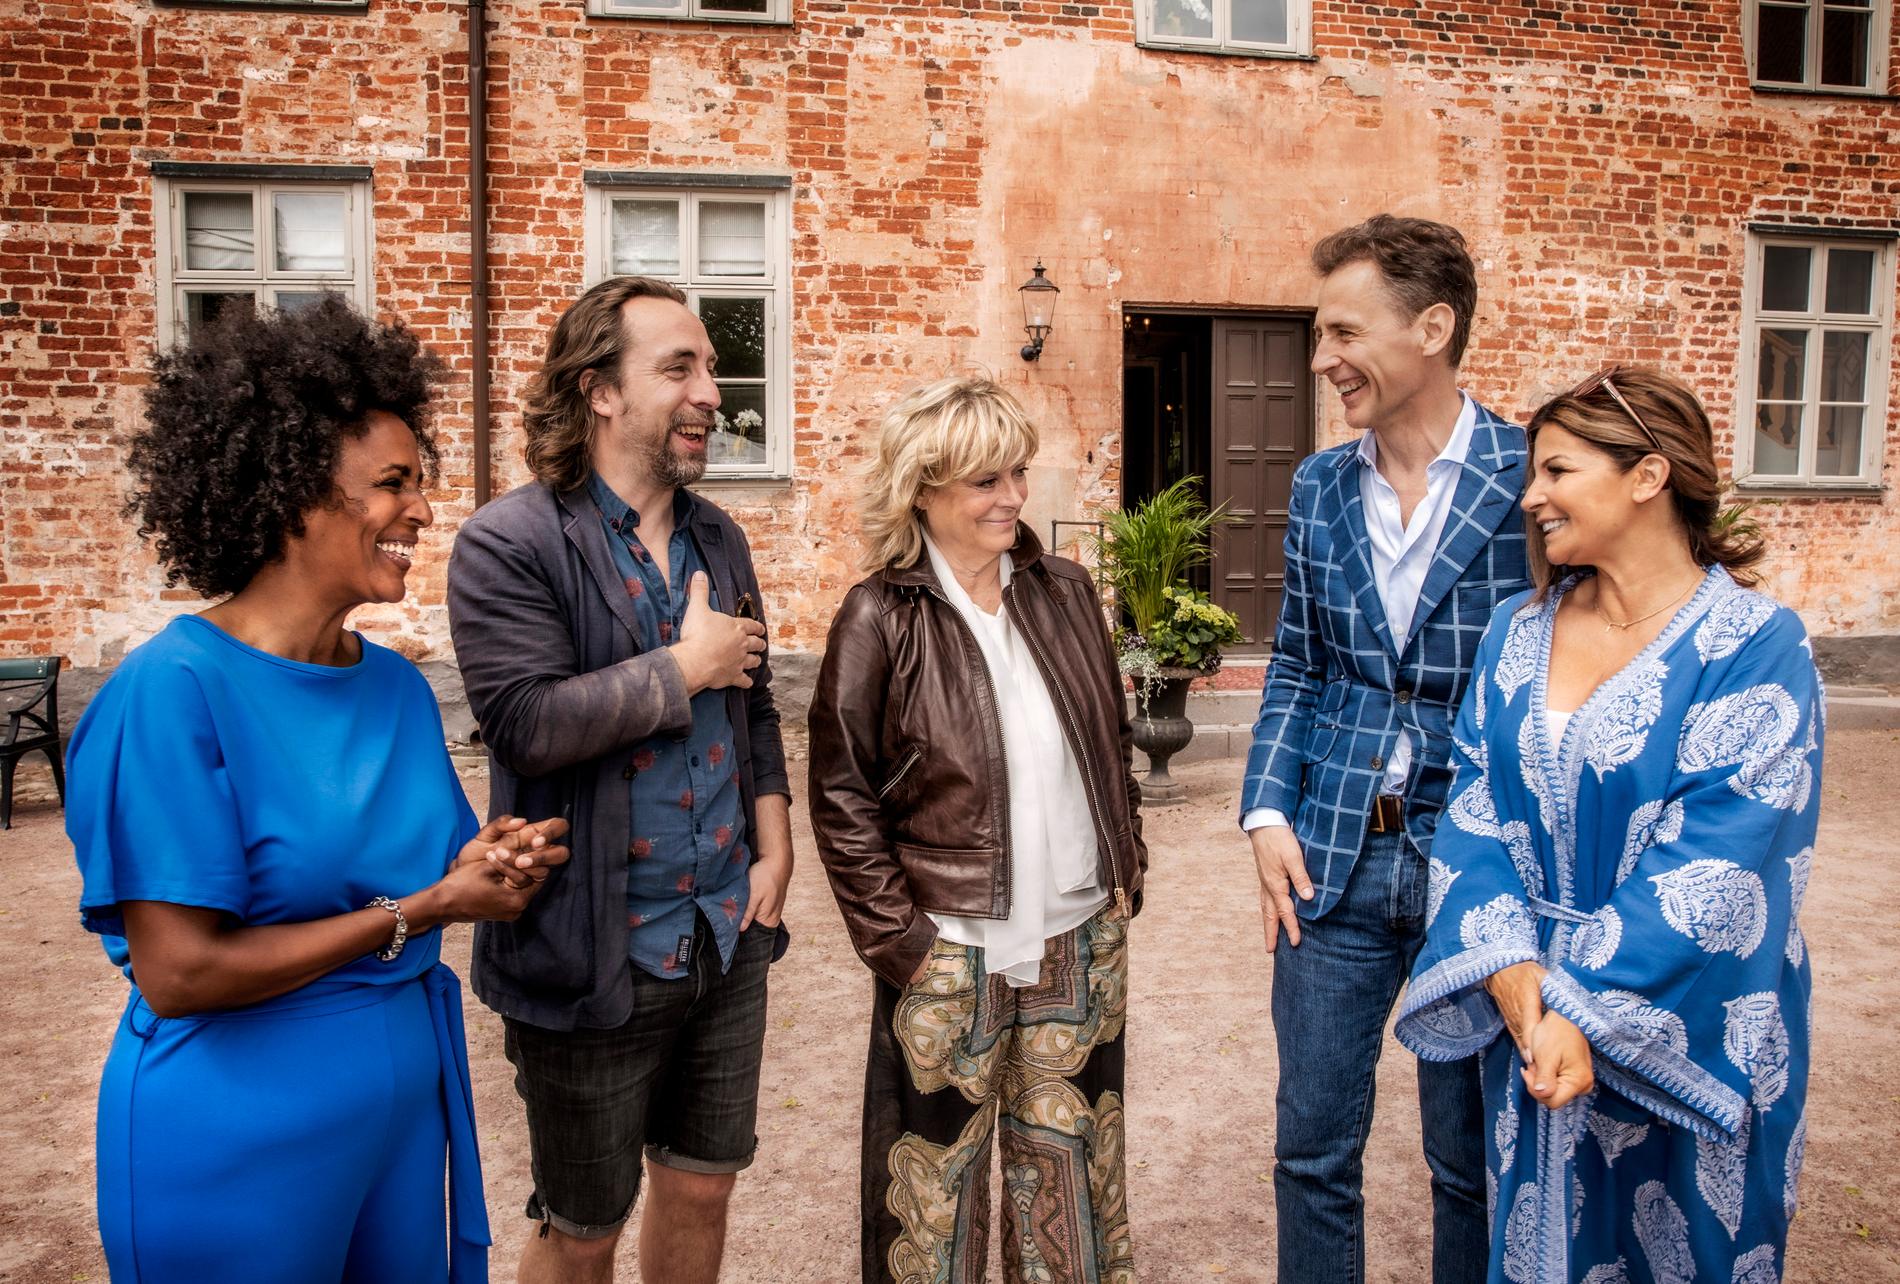 Marika Carlsson, Per Andersson, Grynet Molvig, David Lagercrantz och Carola Häggkvist är årets deltagare i "Stjärnorna på slottet".